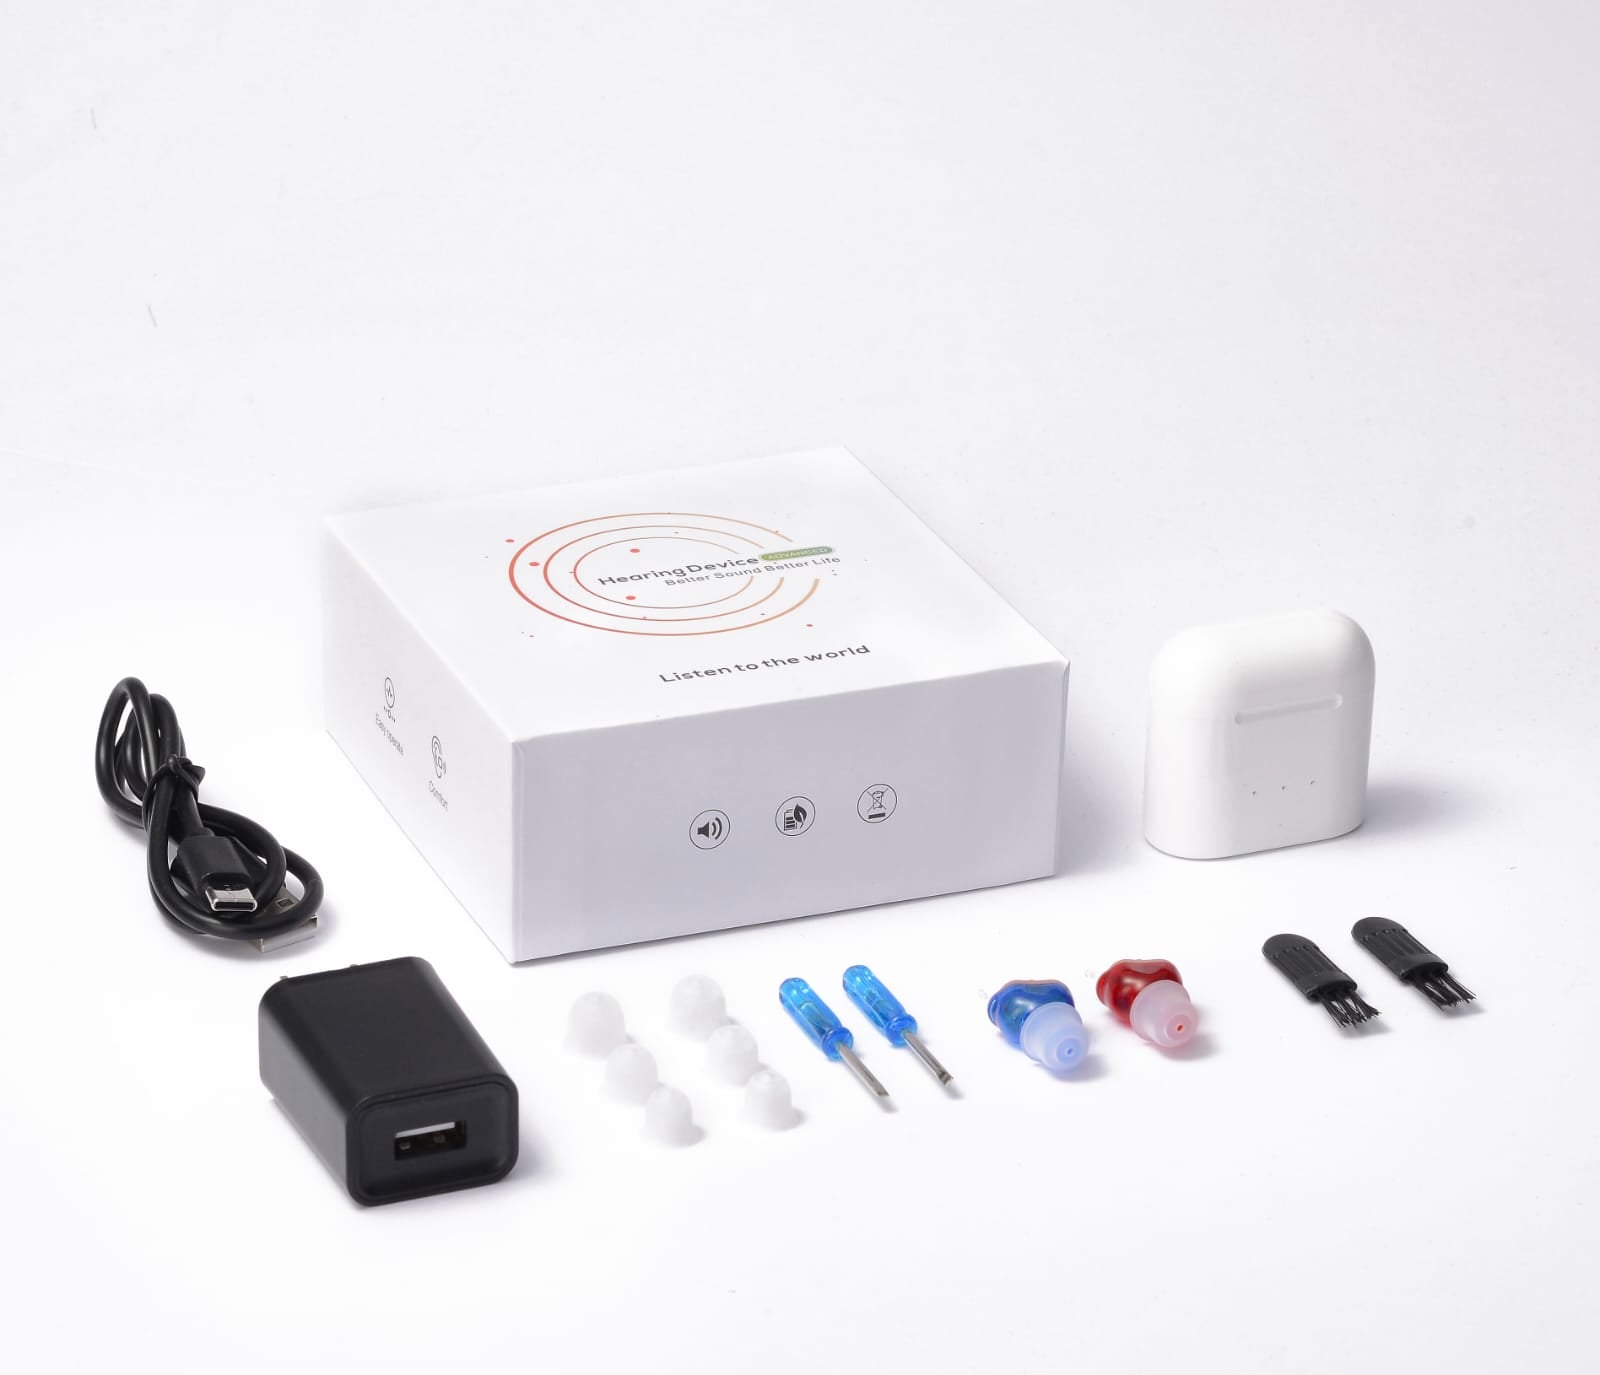 eEAR® CIC-19R Adaptation instantanée miniature rechargeable, gain maximum 33db Complète dans le canal (CIC) Paire d'aides auditives pour oreilles gauche et droite (R&B) Vendue à plus de 25 000 dans le monde